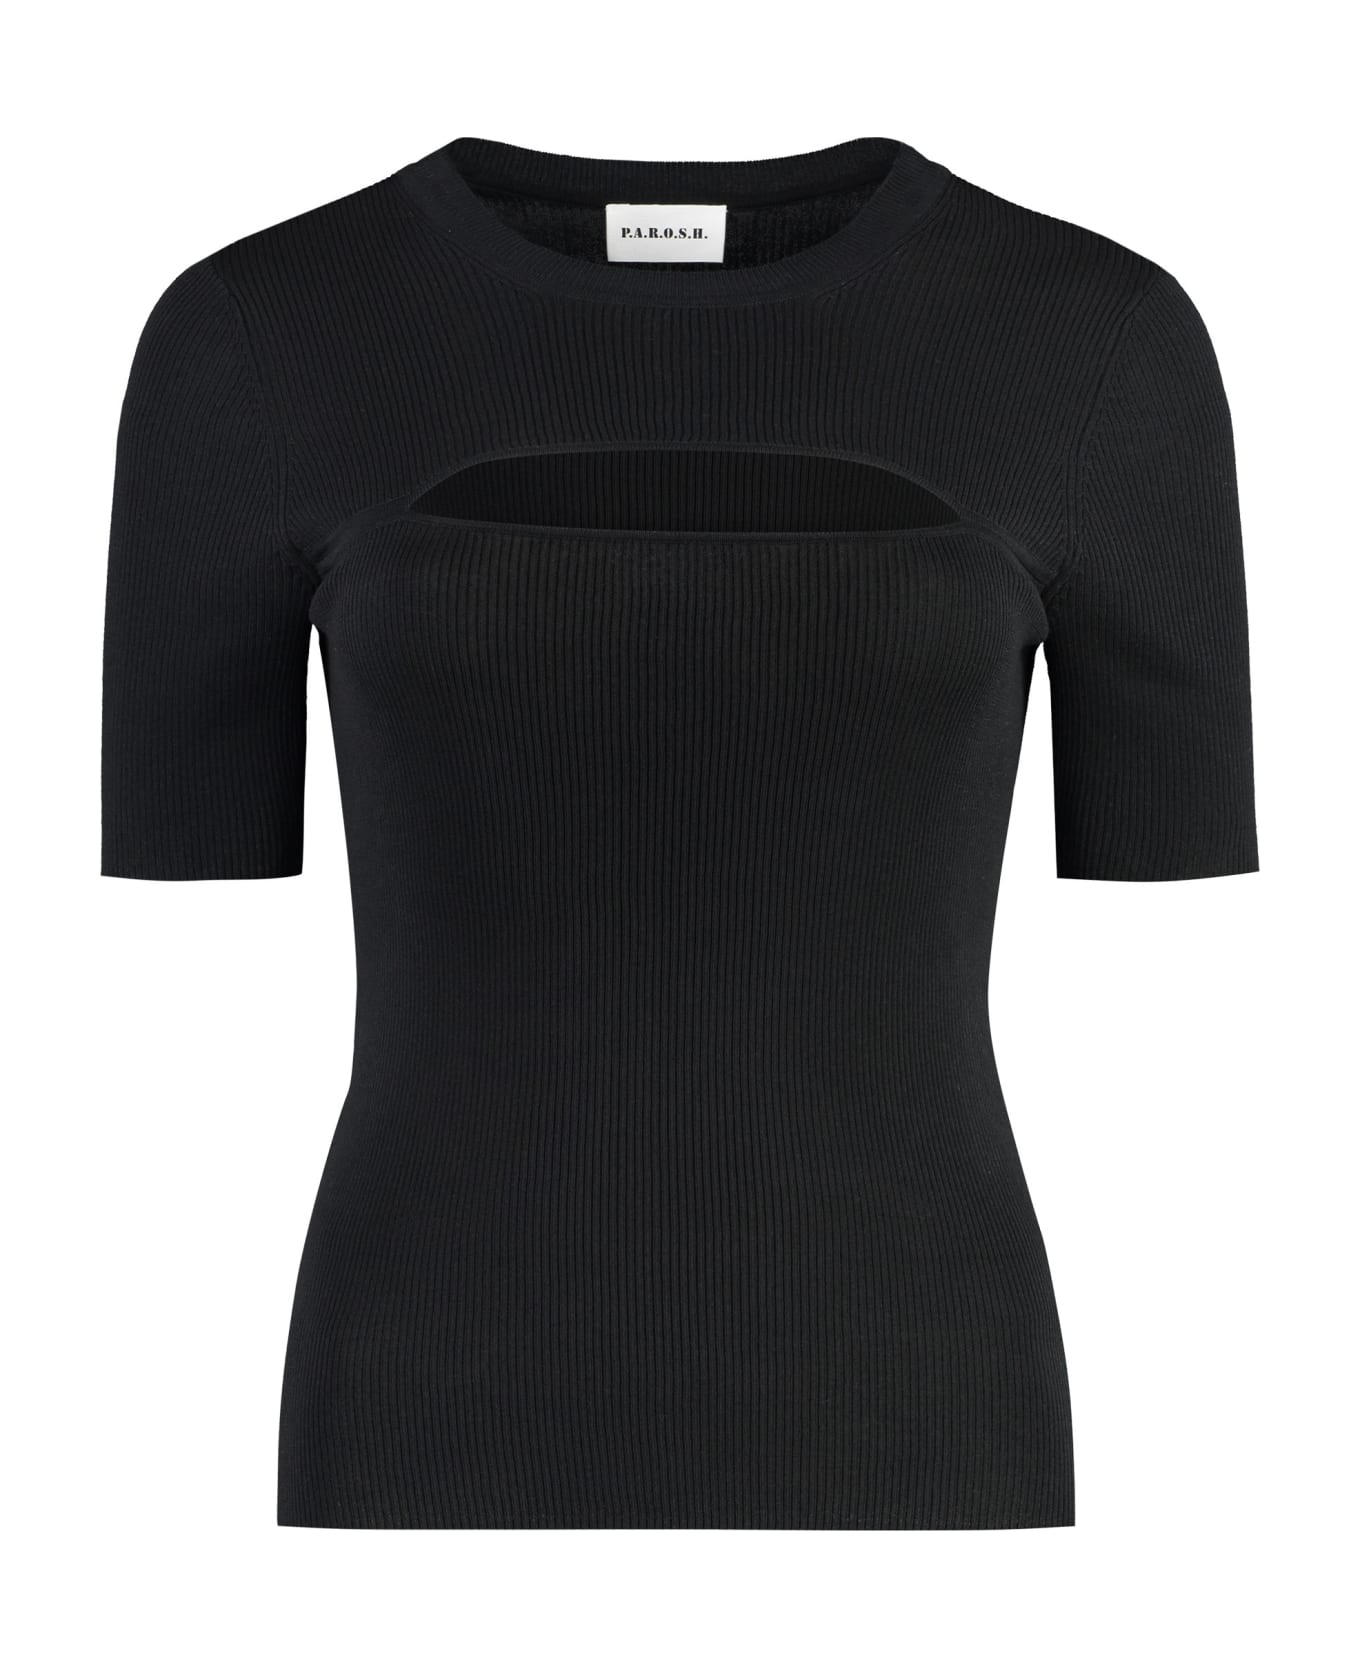 Parosh Knitted T-shirt - black ニットウェア